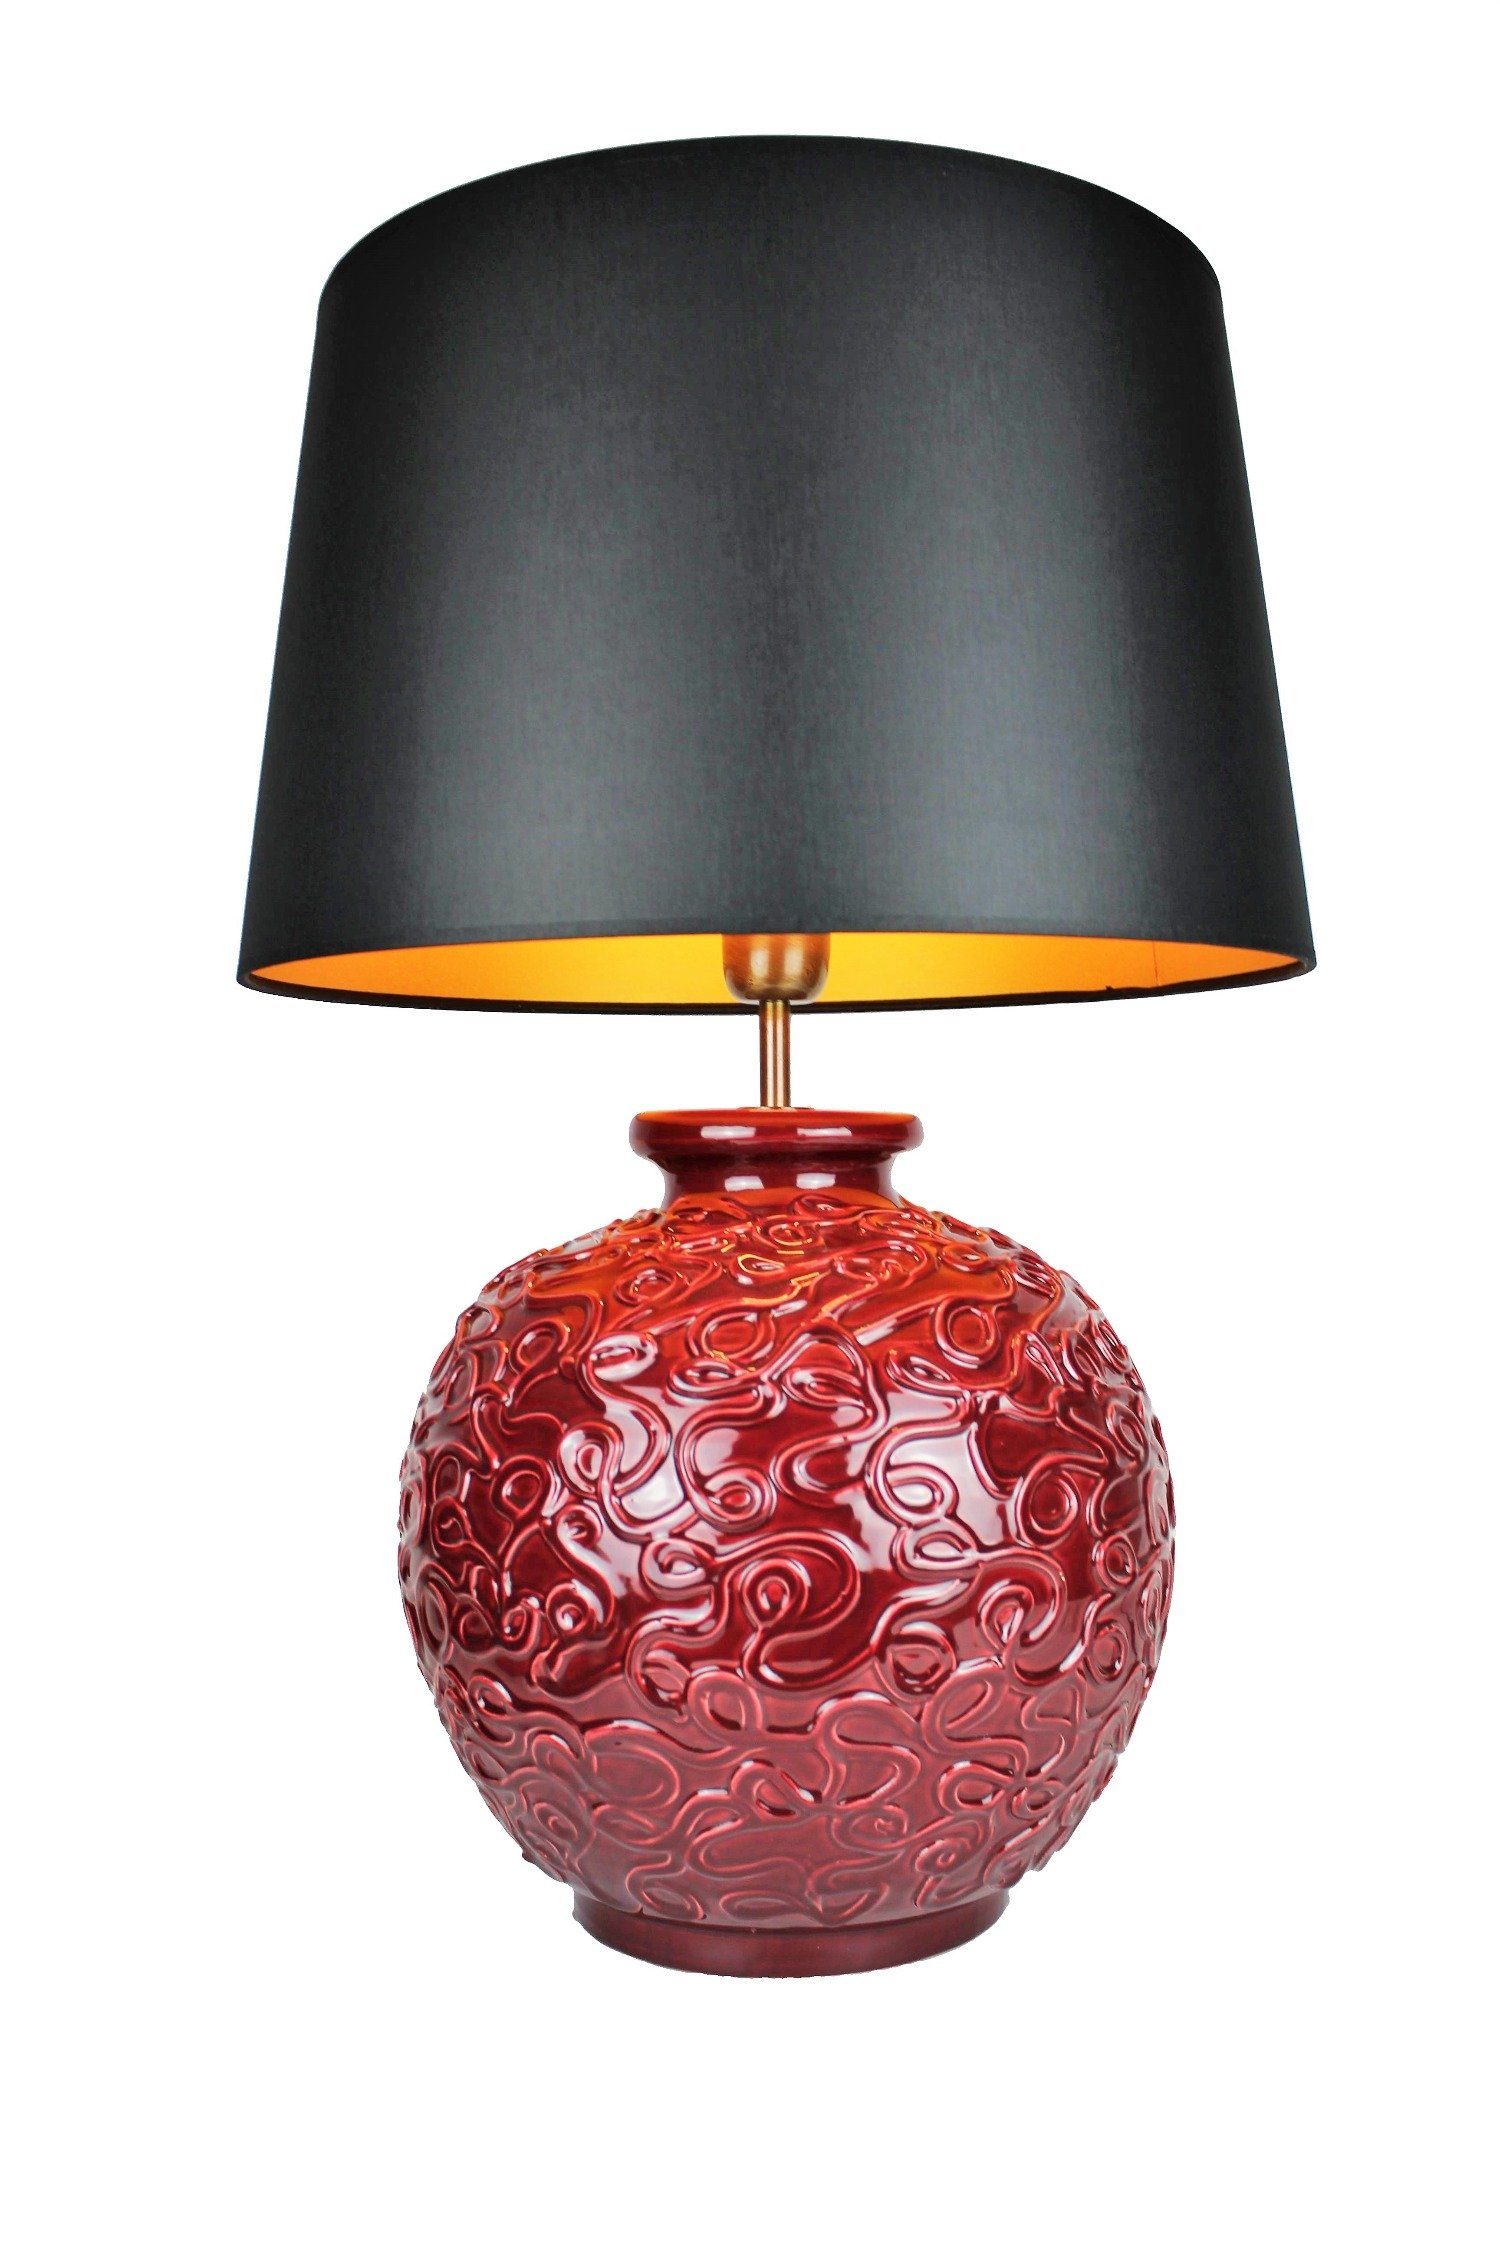 Tischleuchte Tischlampe Keramik Fuß Schirm braun beige 45cm Wohnzimmer Lampe 